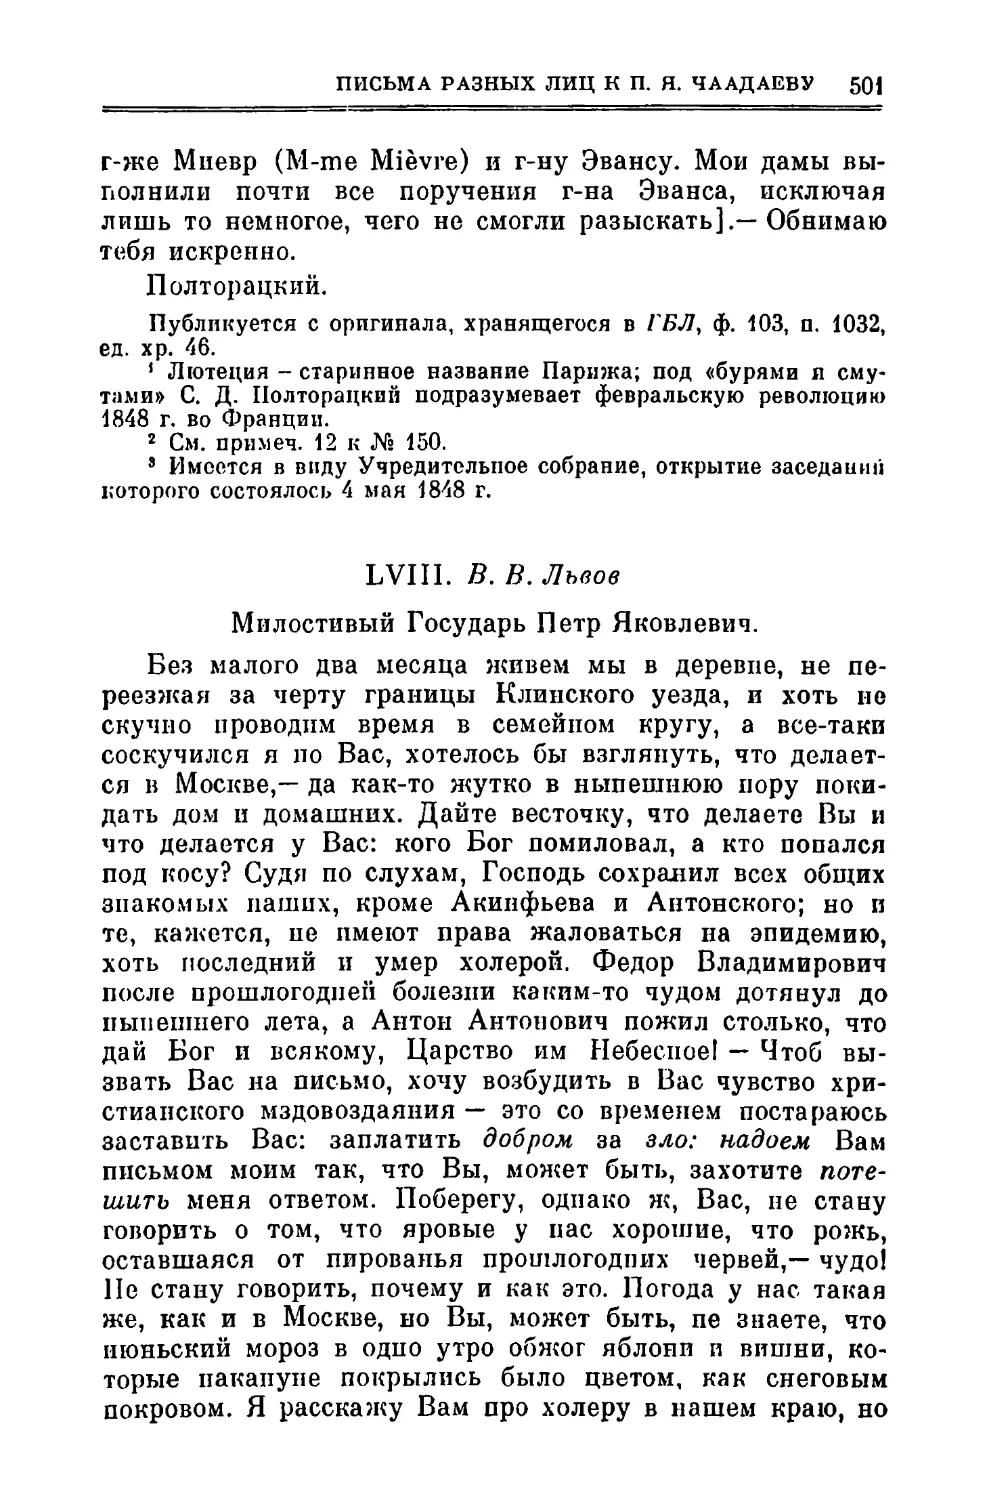 LVIII. Львов В.В. 12.VII.1848